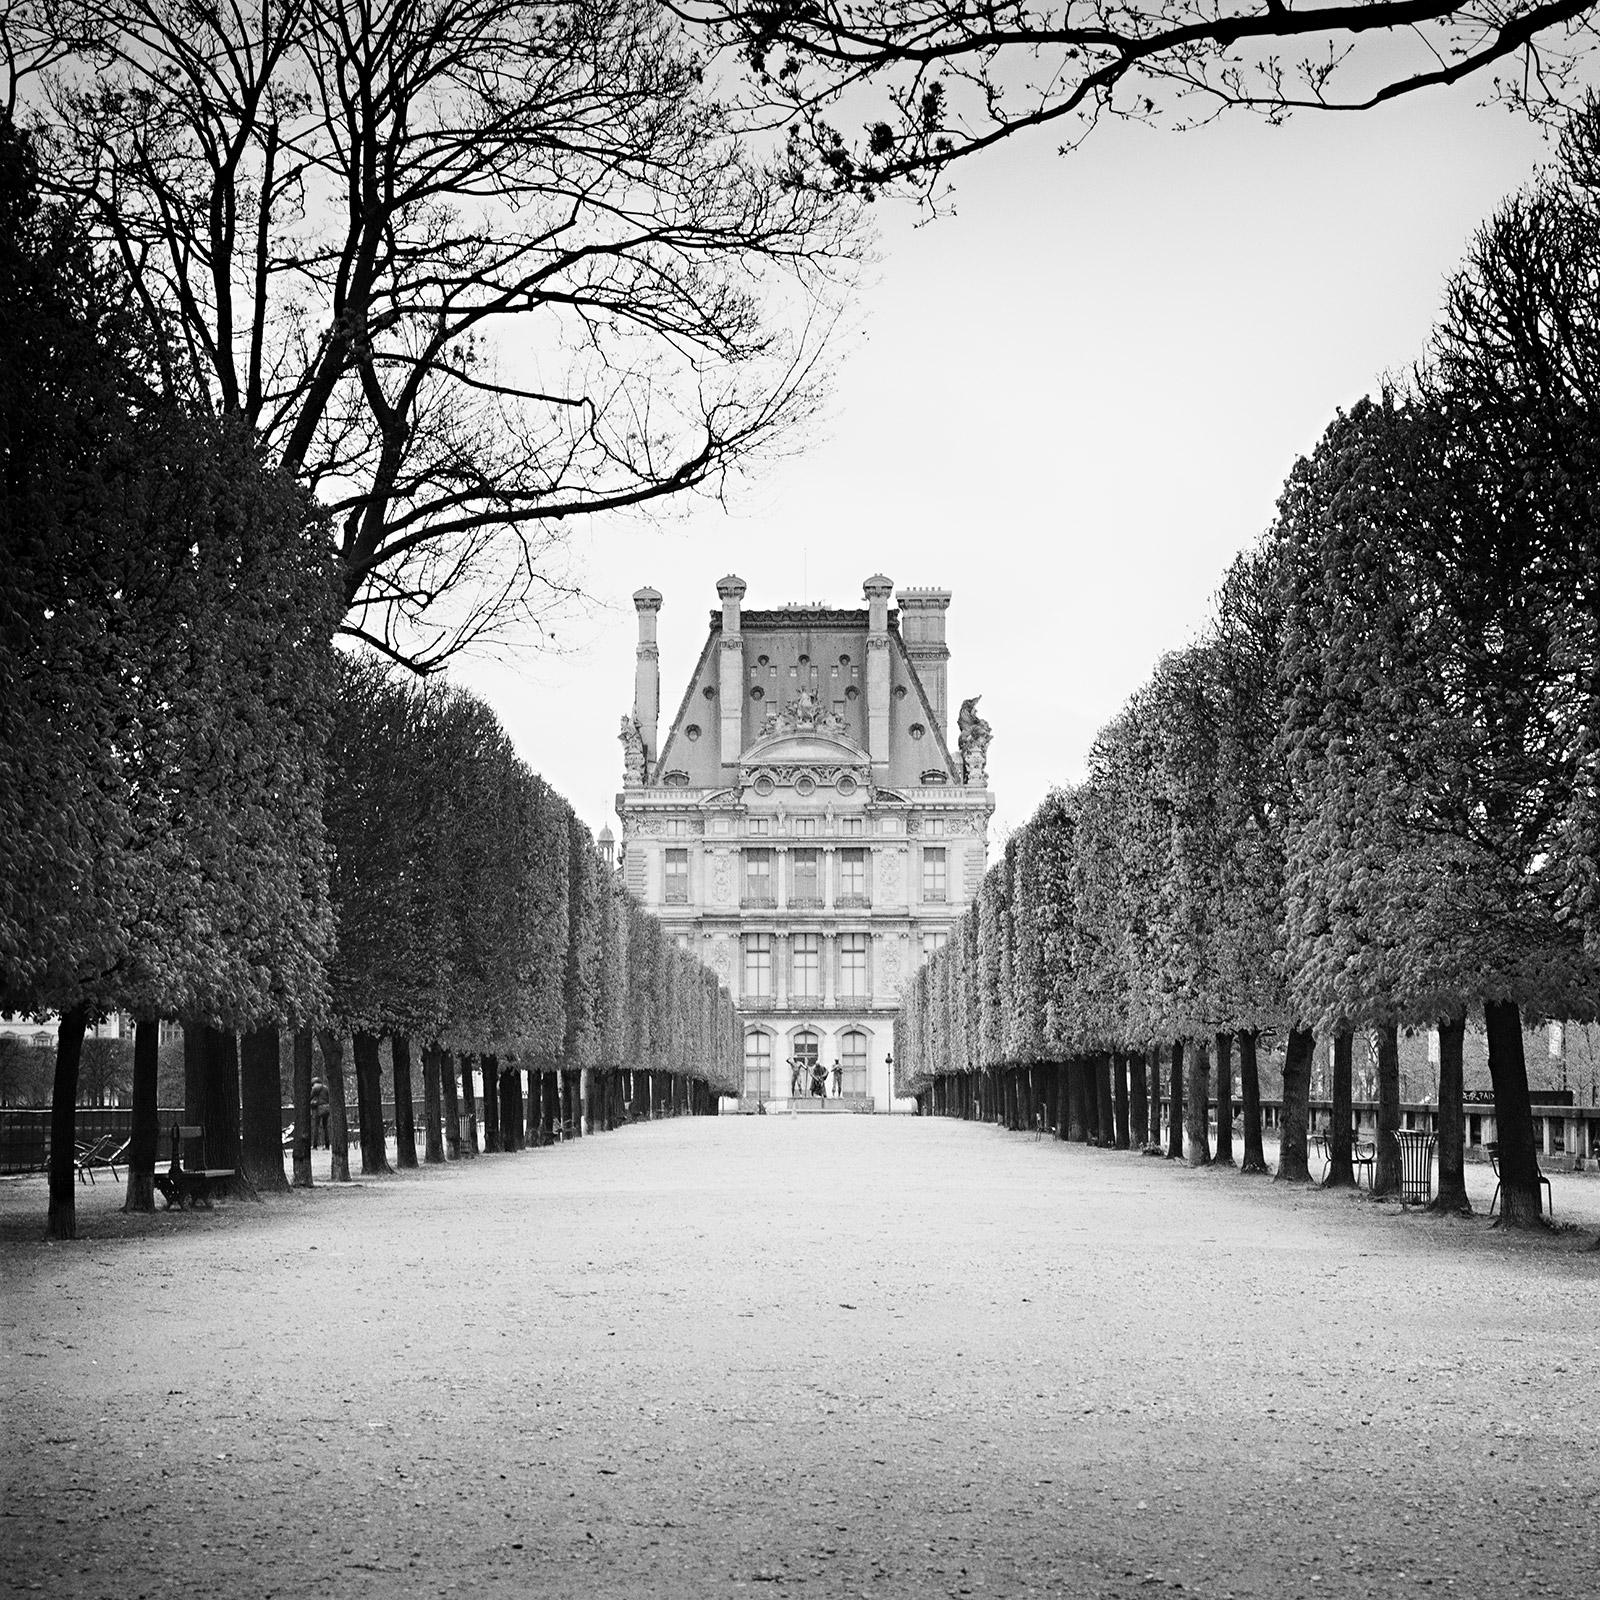 Pavillon de Flore, Paris, France, black and white fineart cityscape photography 